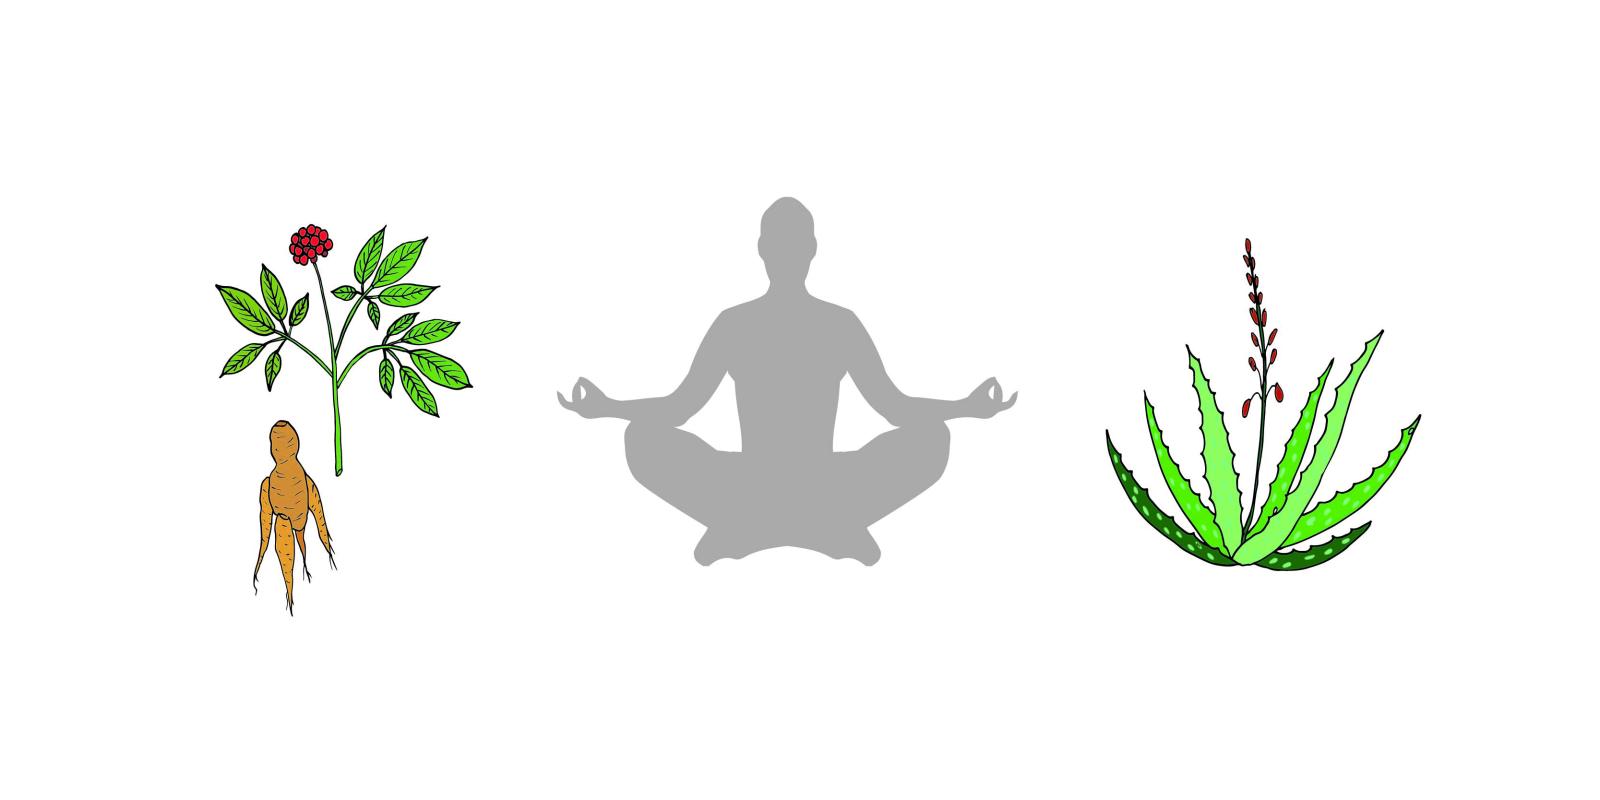 Illustrasjon av mediterende menneske, ginsengrot og aloe vera plante.